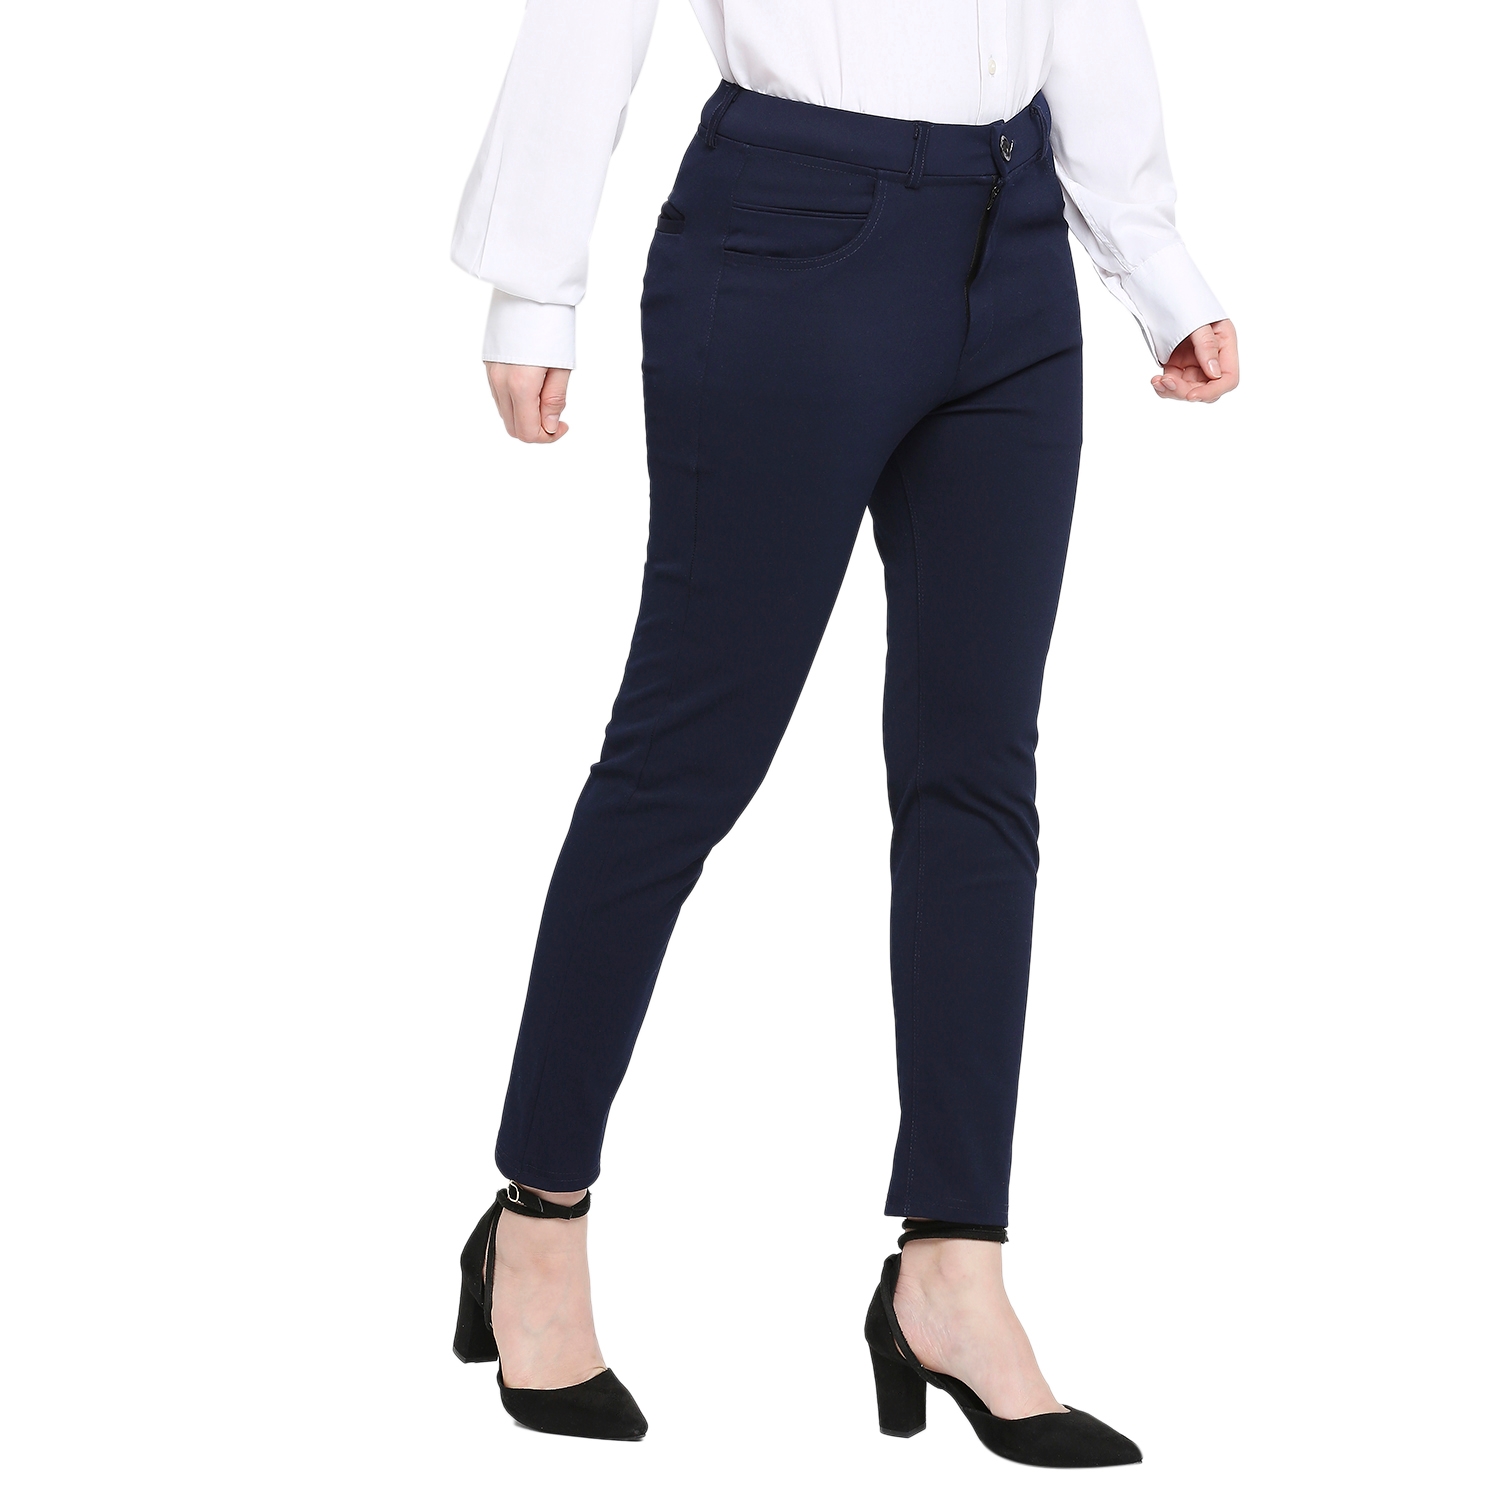 Shop Women's Formal Pants Online on Sale at a la mode